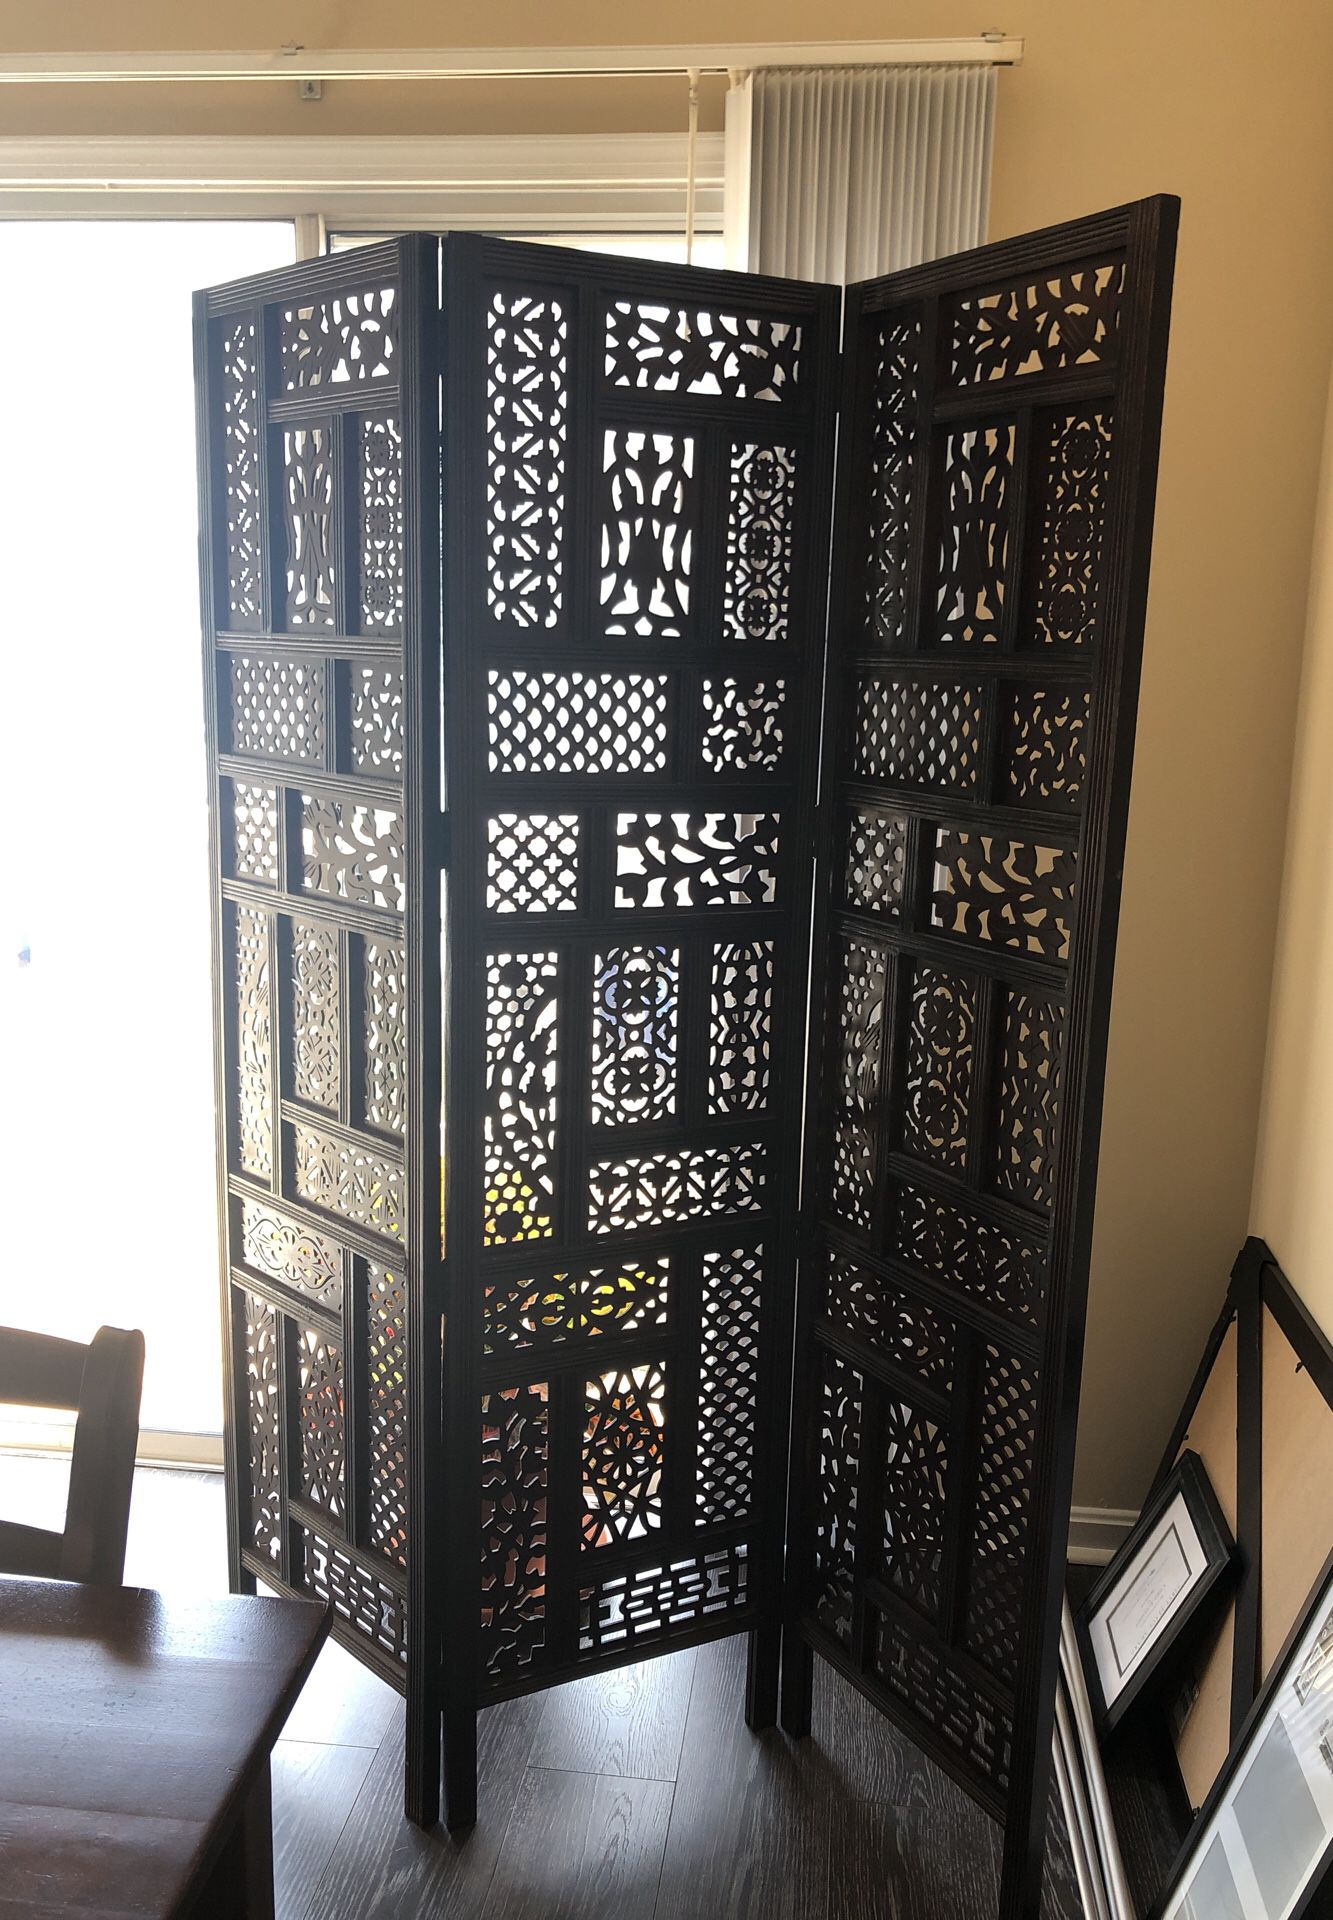 Wood ornate divider